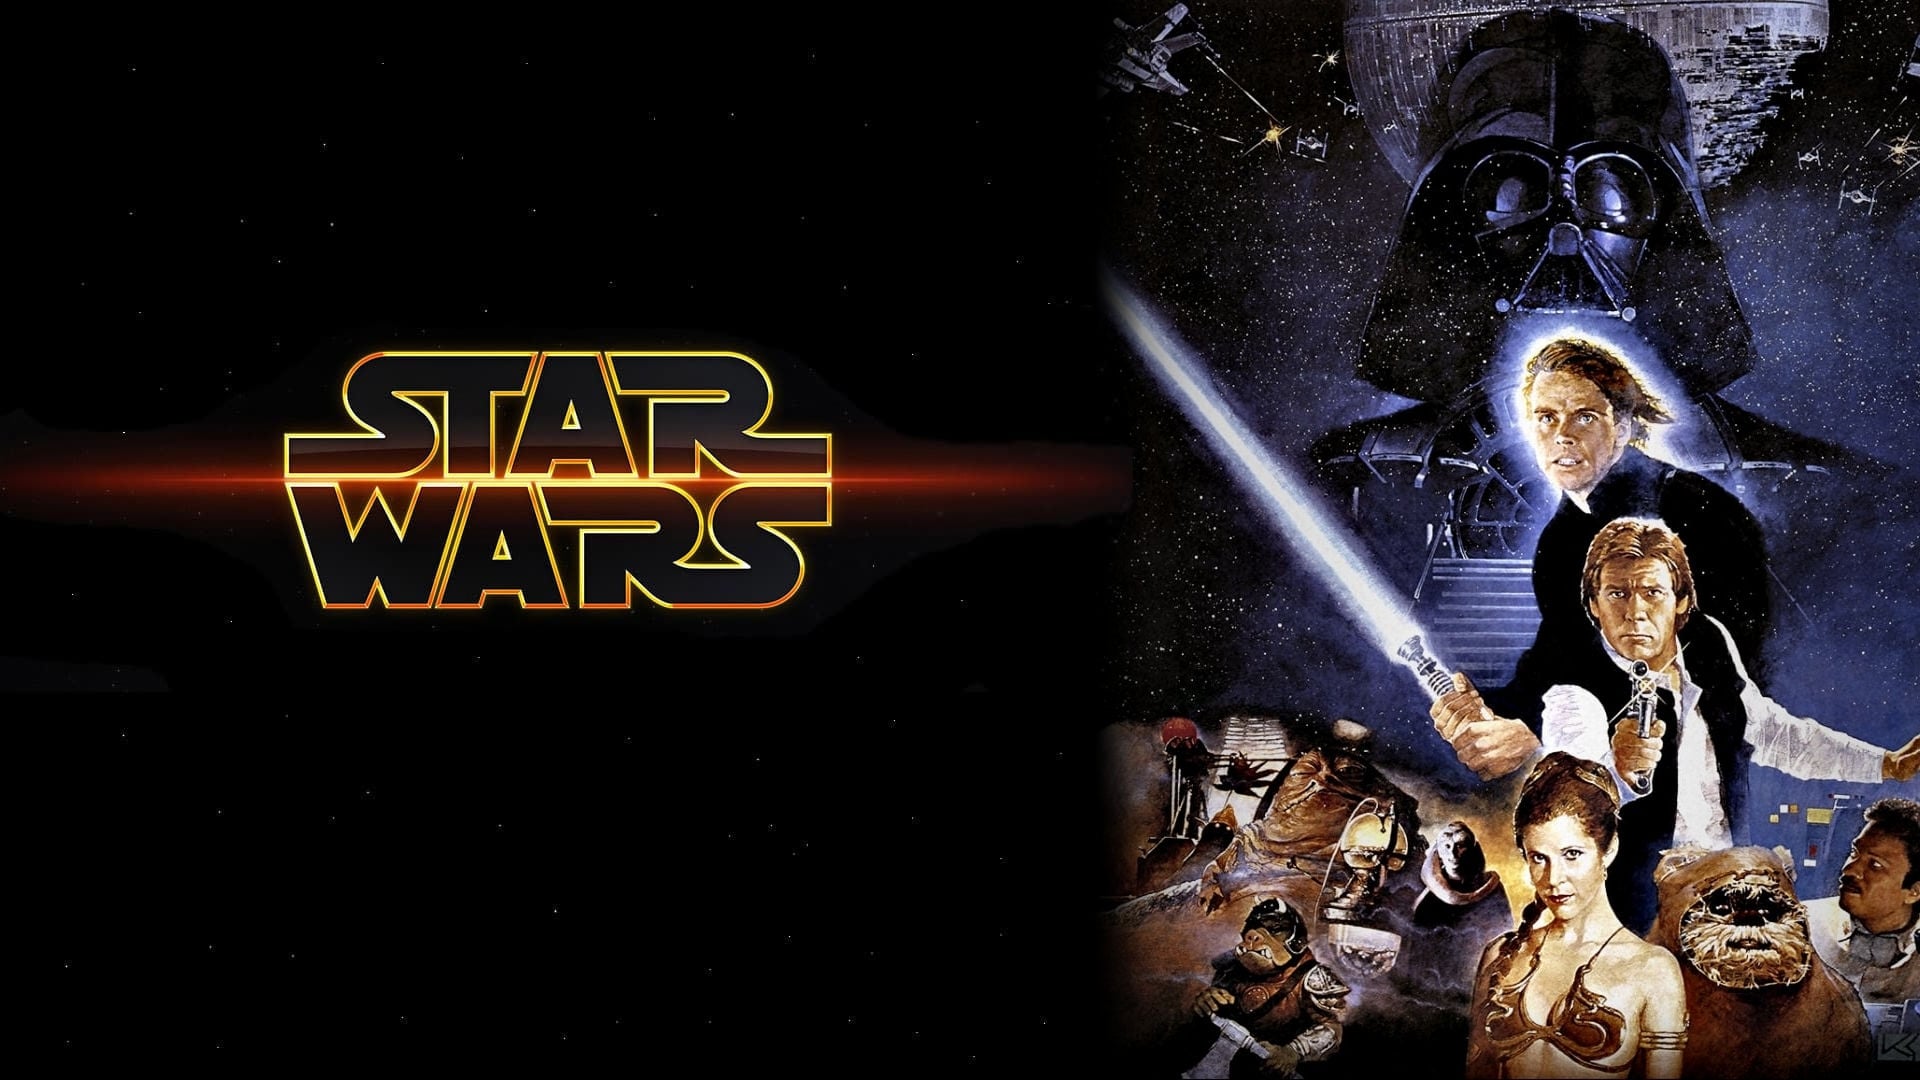 Star Wars: Episode VI - Return of the Jedi Foto's.